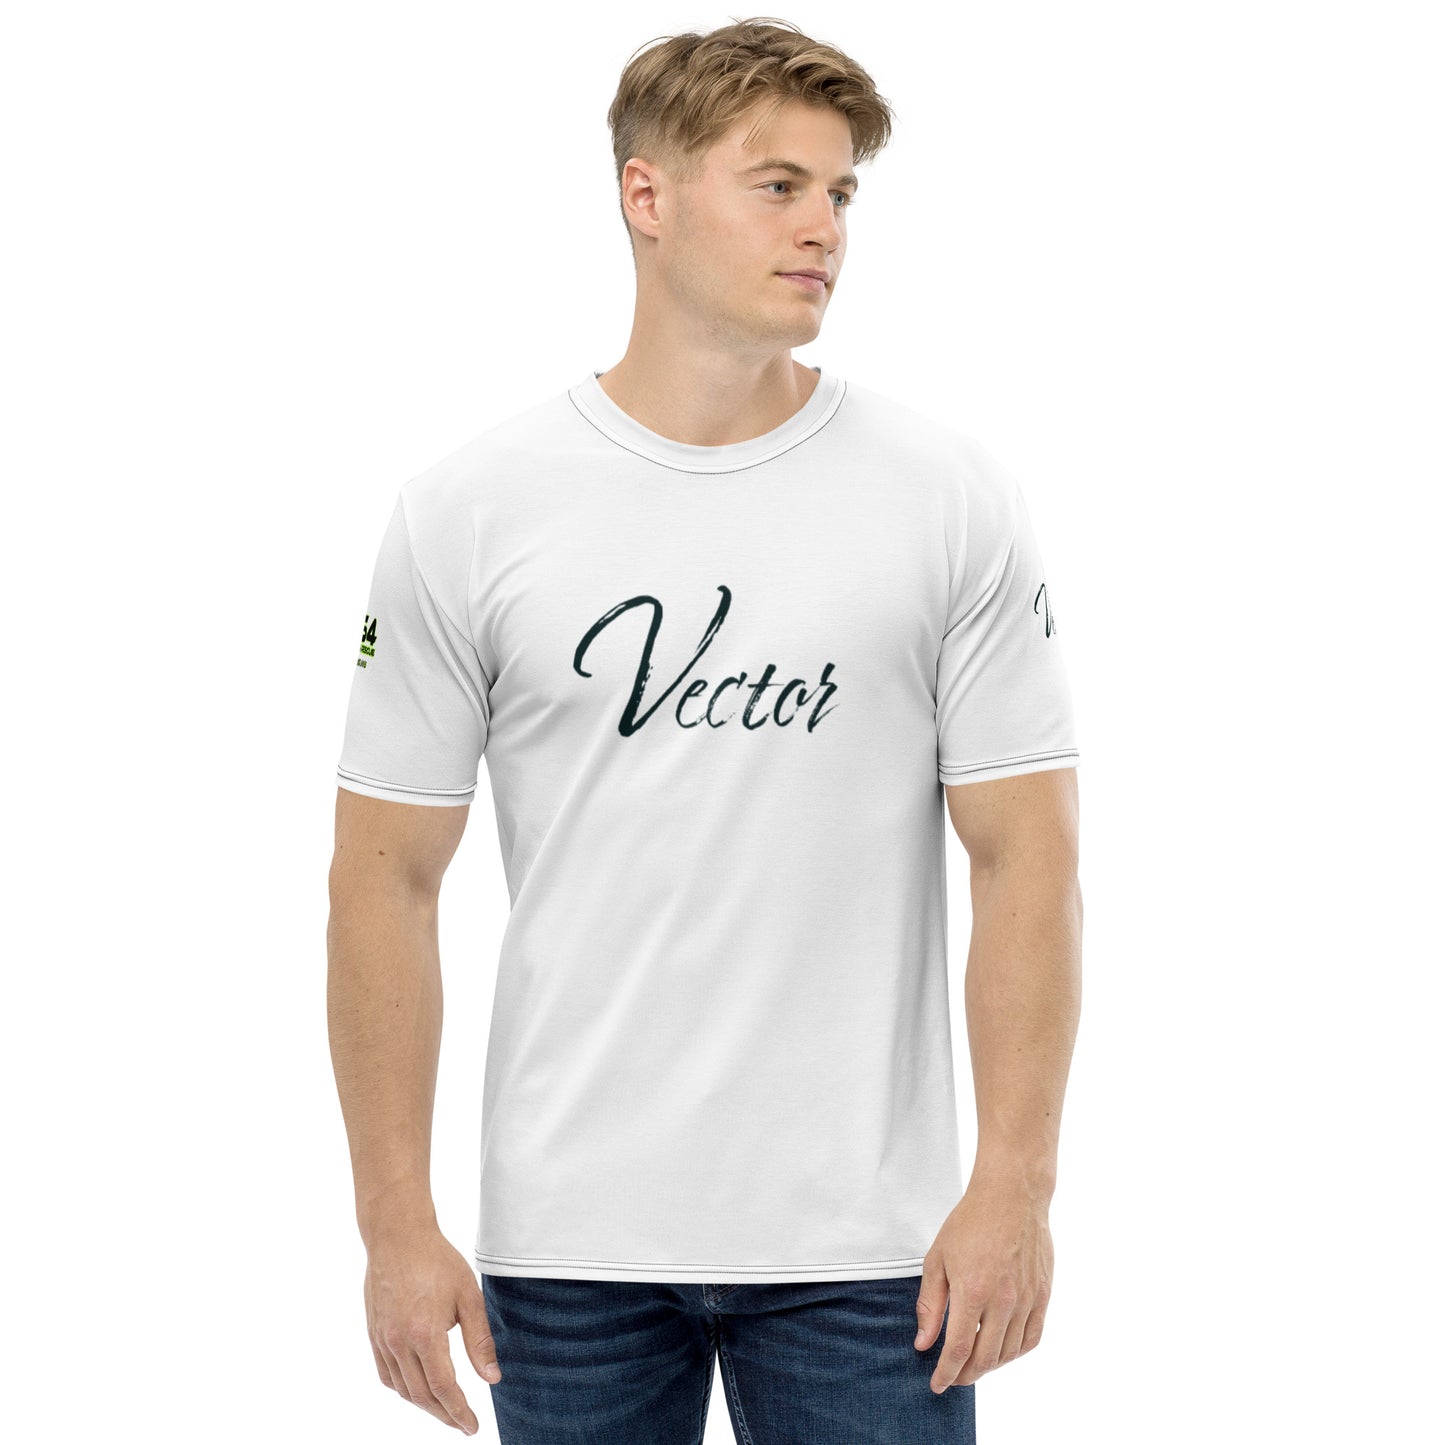 Vector VIIII USA 954 Men's t-shirt